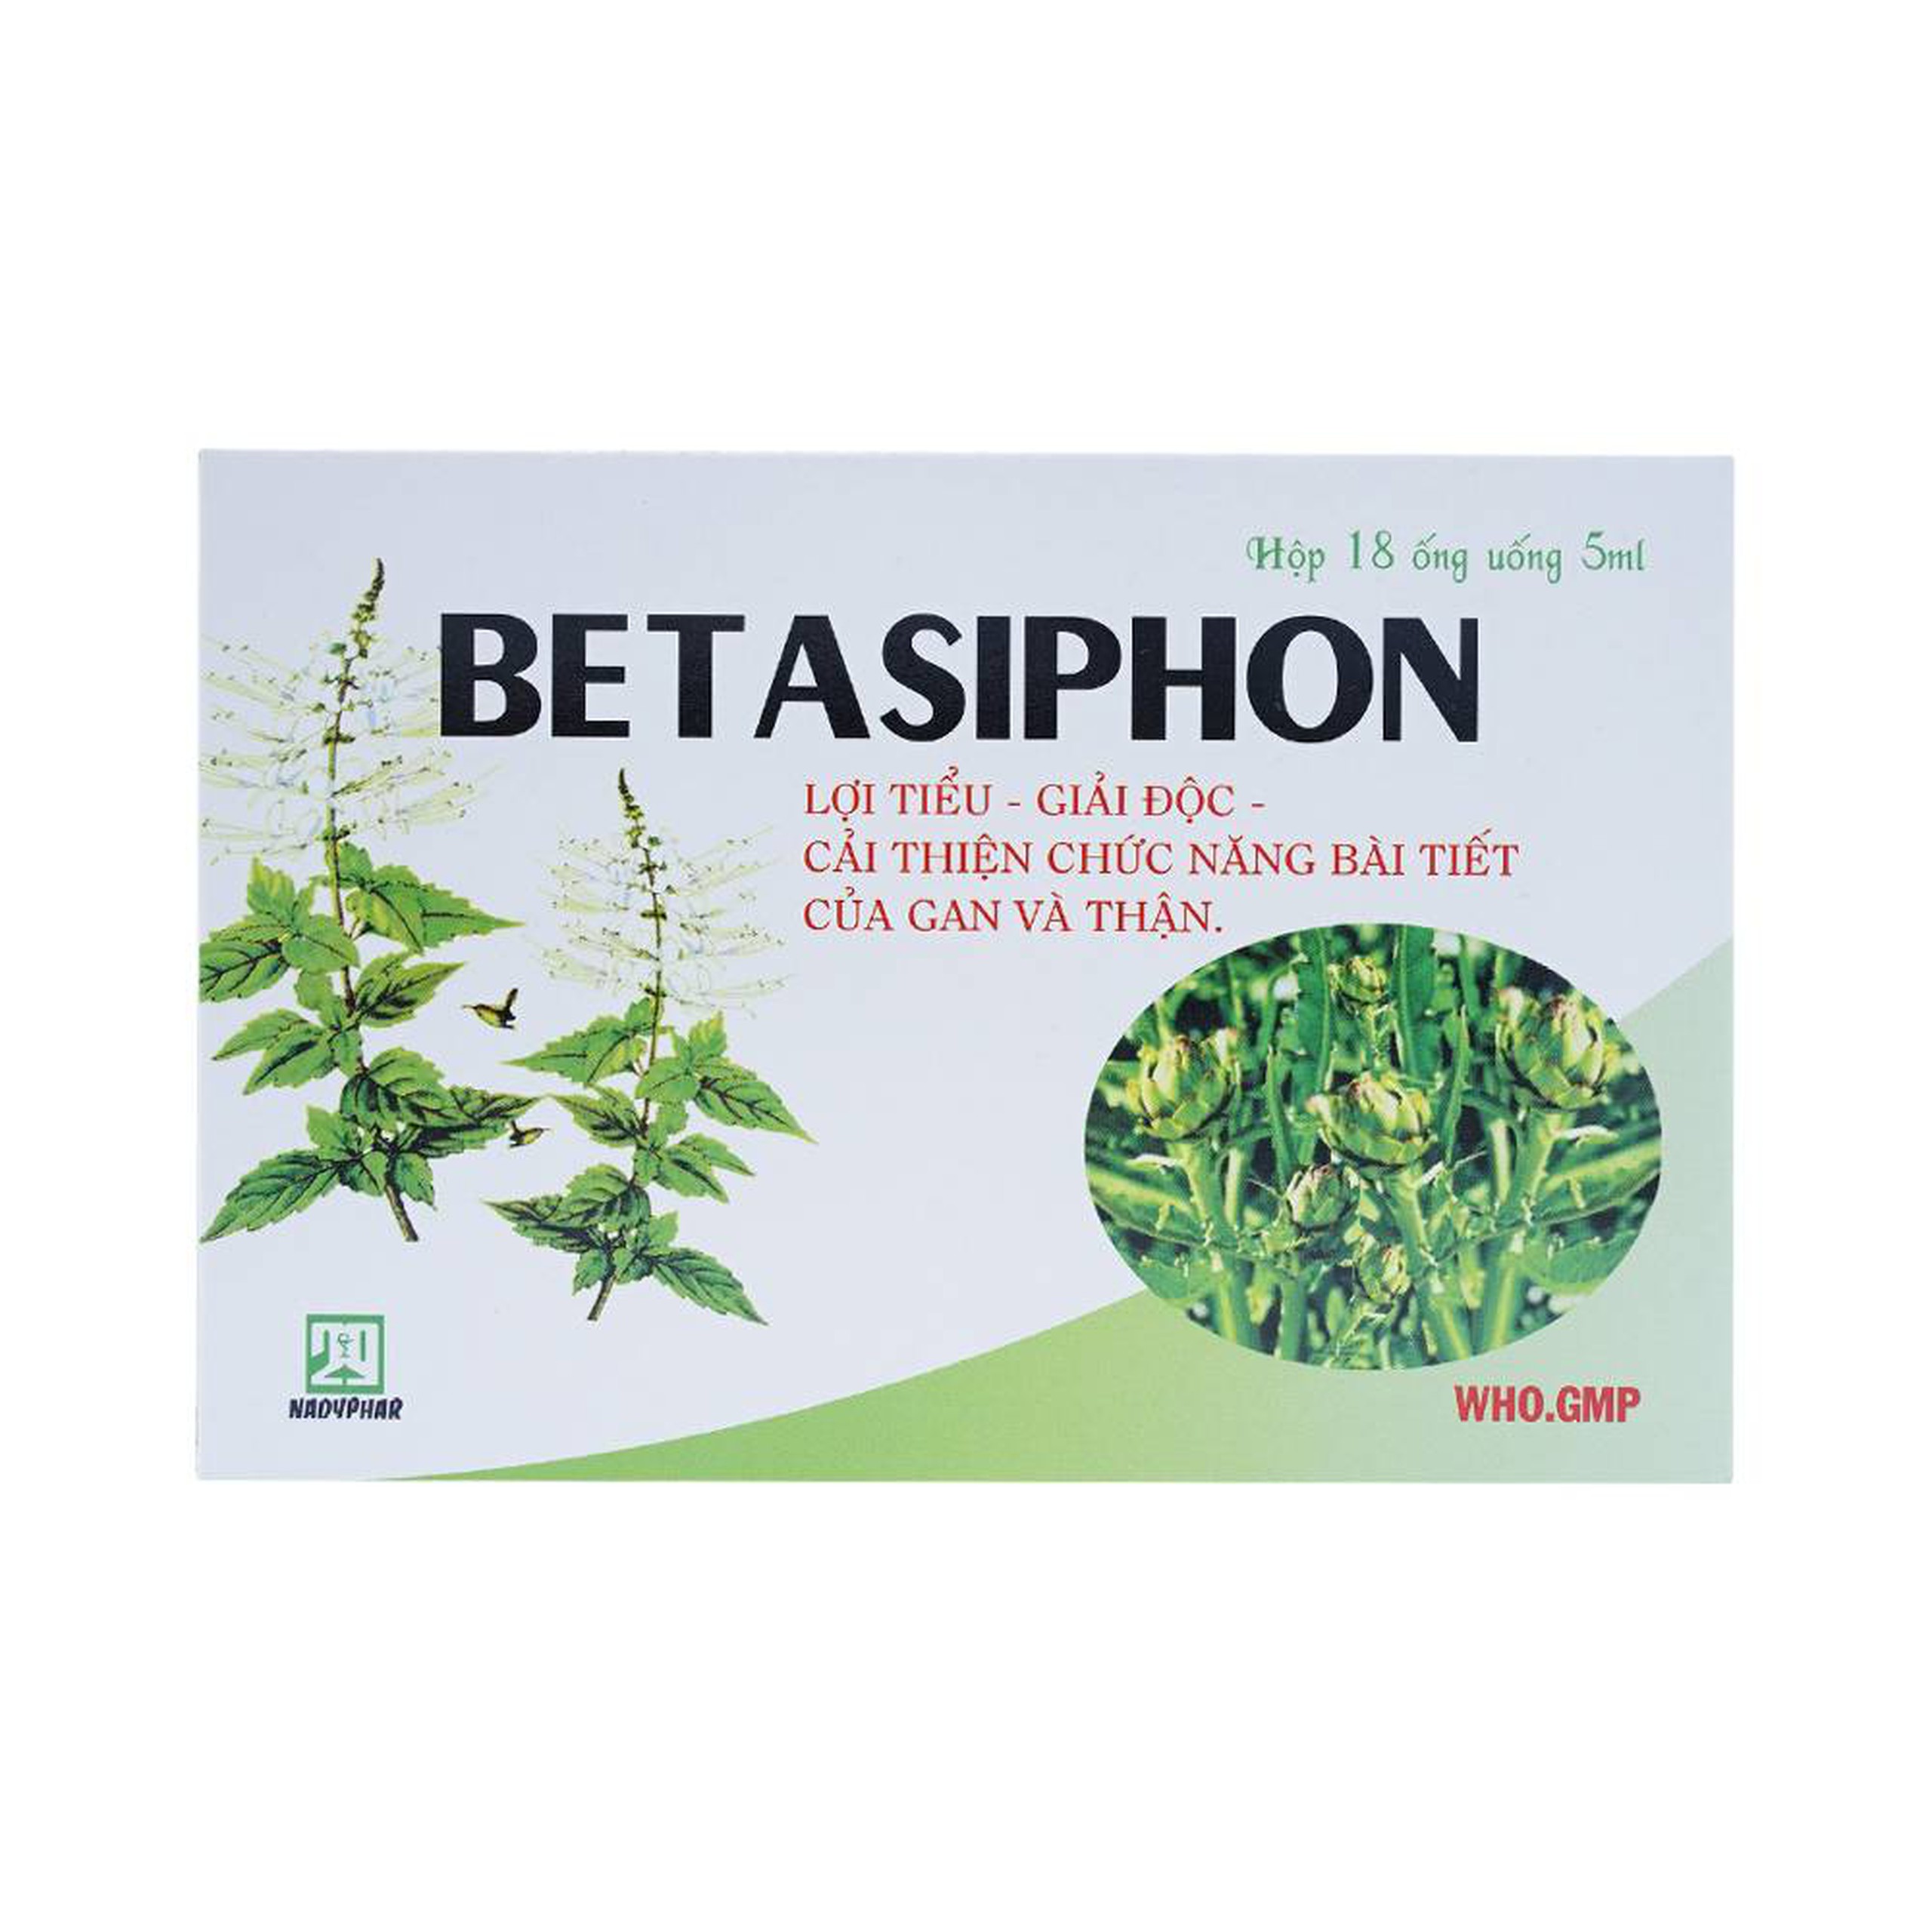 Dung dịch Betasiphon Nadyphar lợi tiểu, giải độc (18 ống x 5ml)